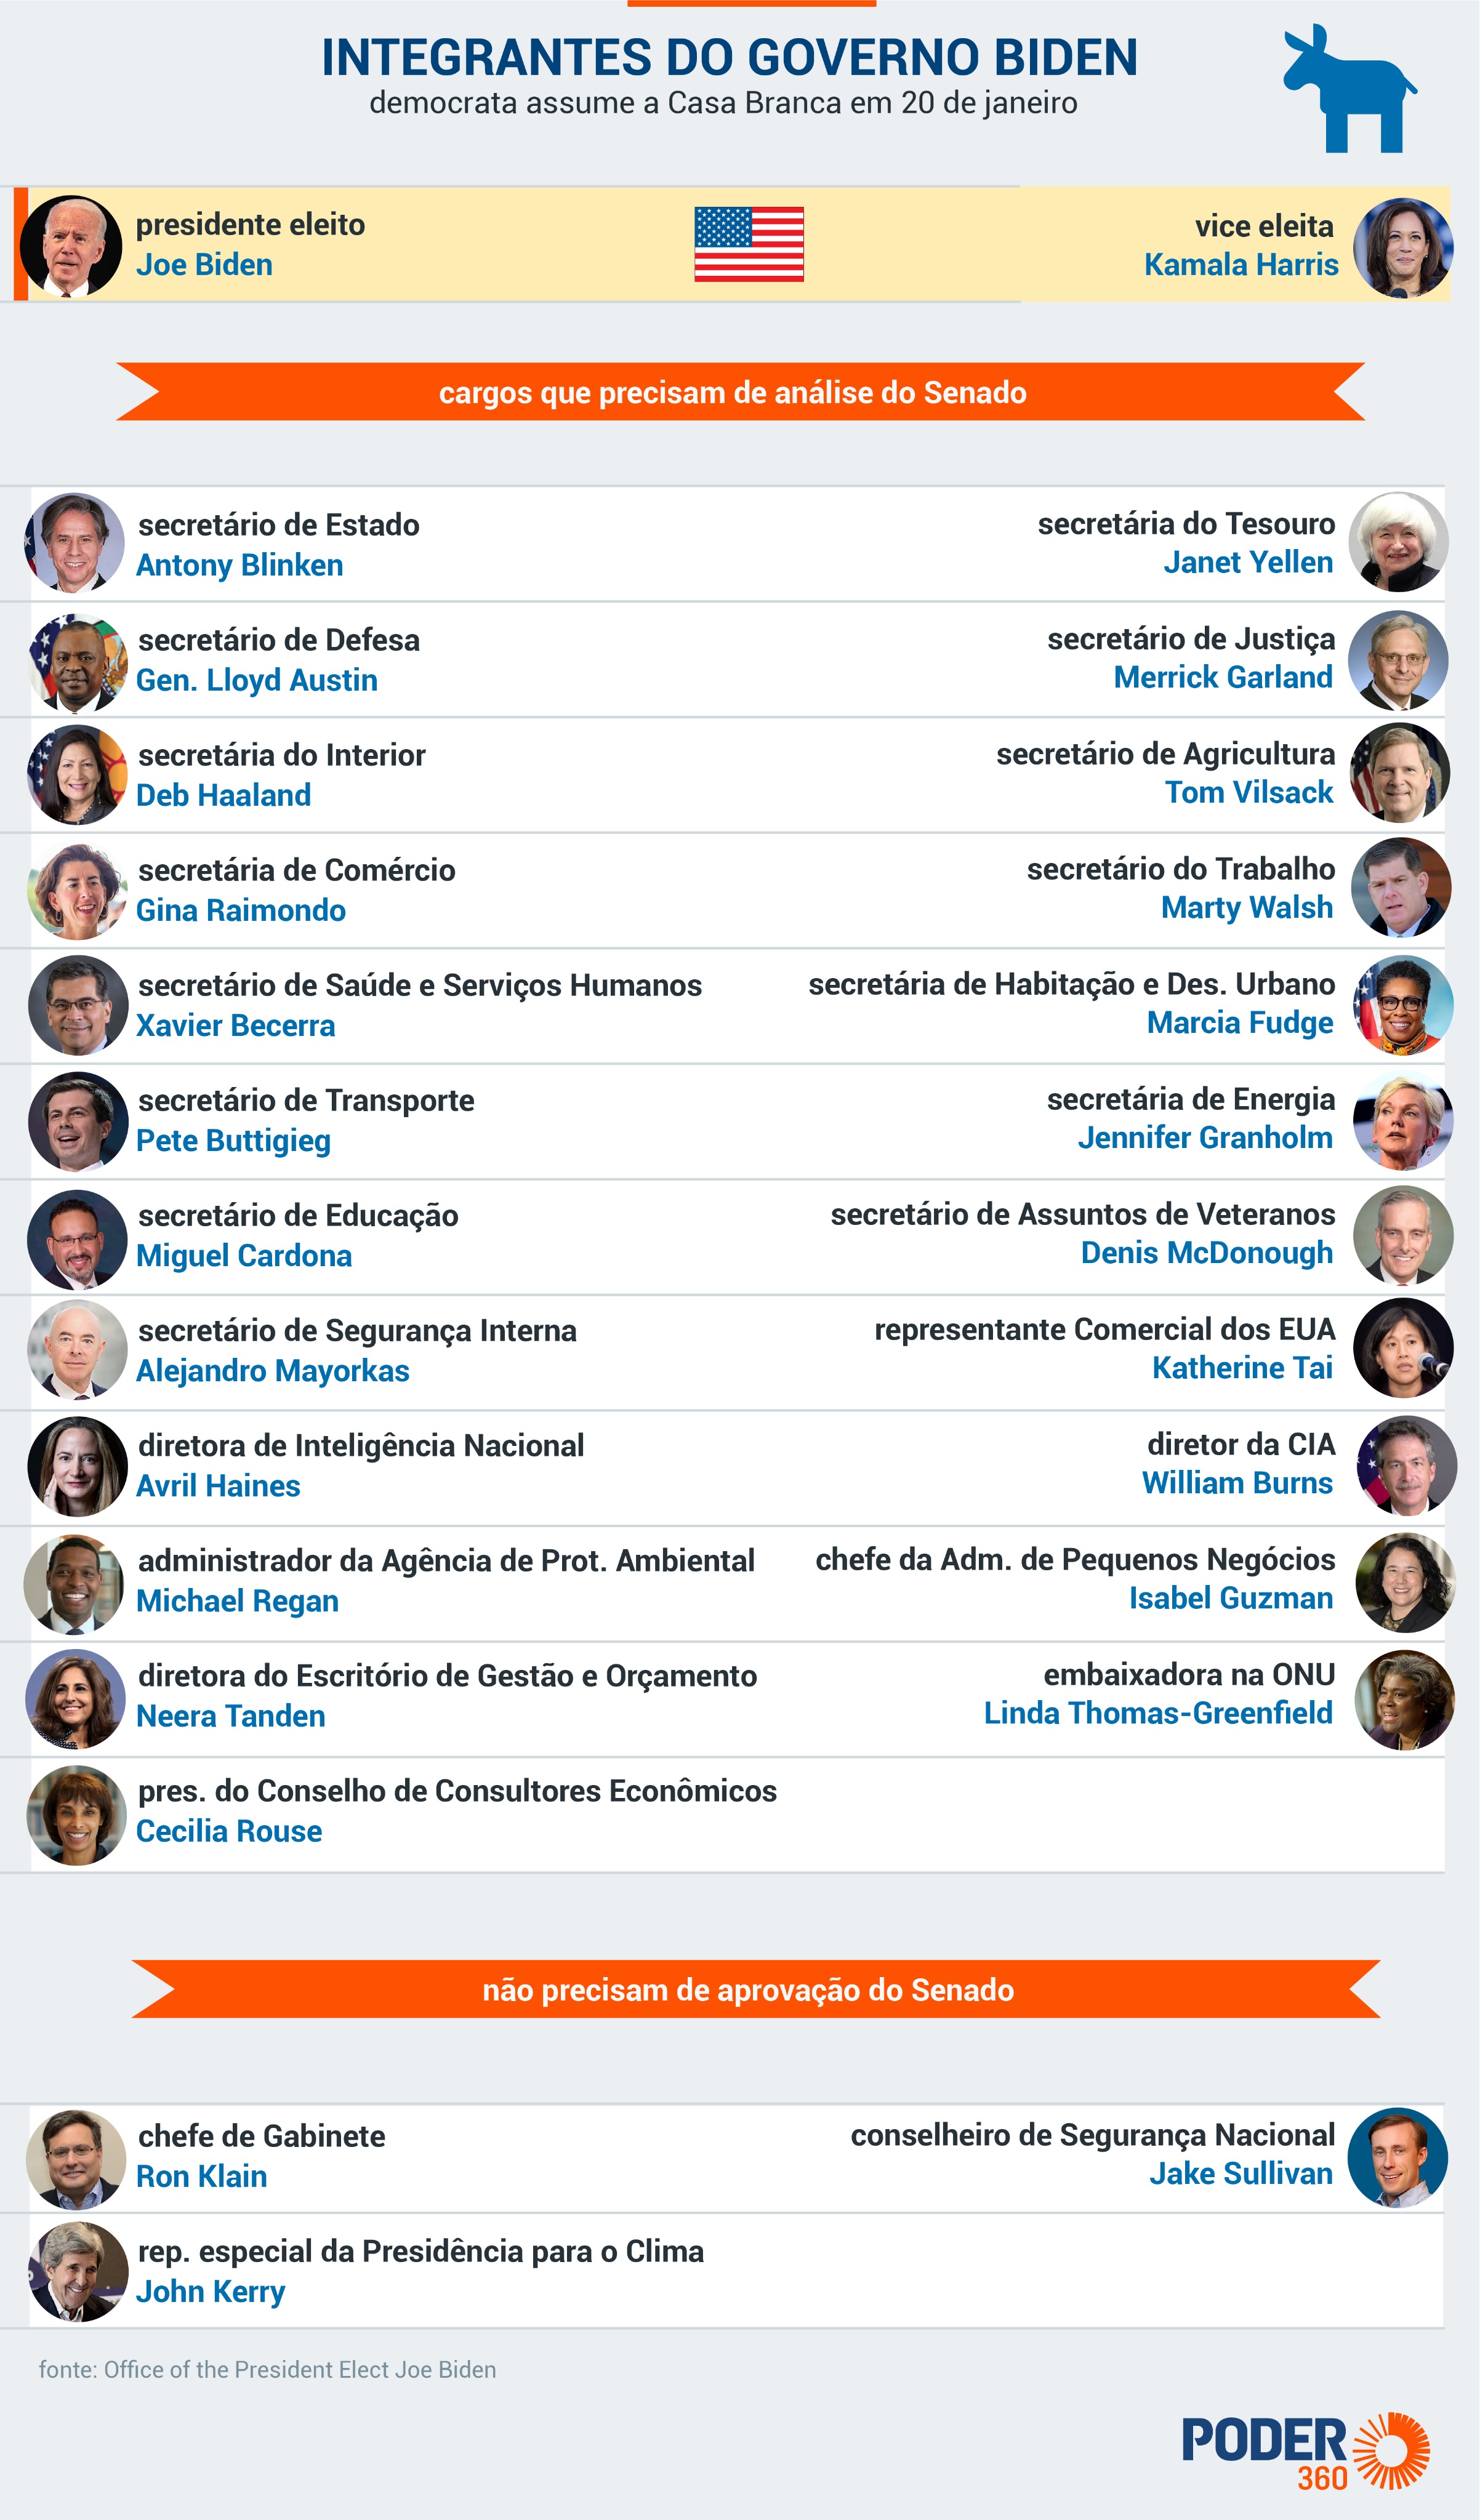 Integrantes do governo Biden - Imagem: Poder 360